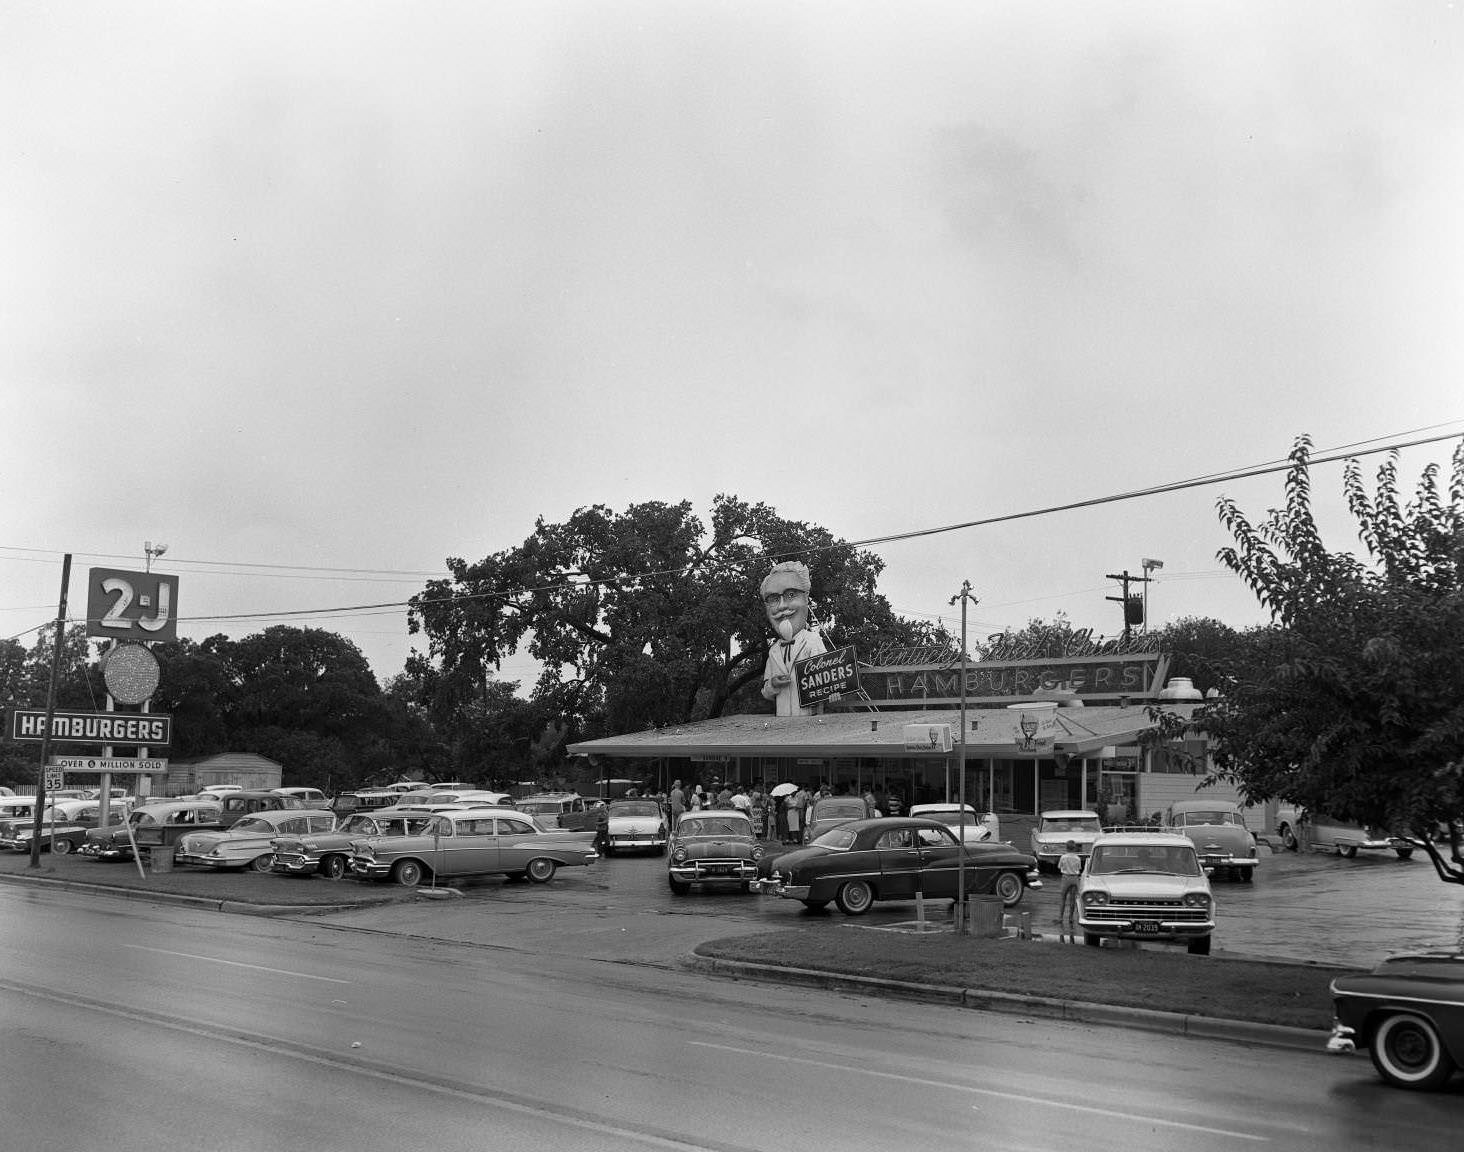 2-J Hamburgers in Austin, Texas, 1960